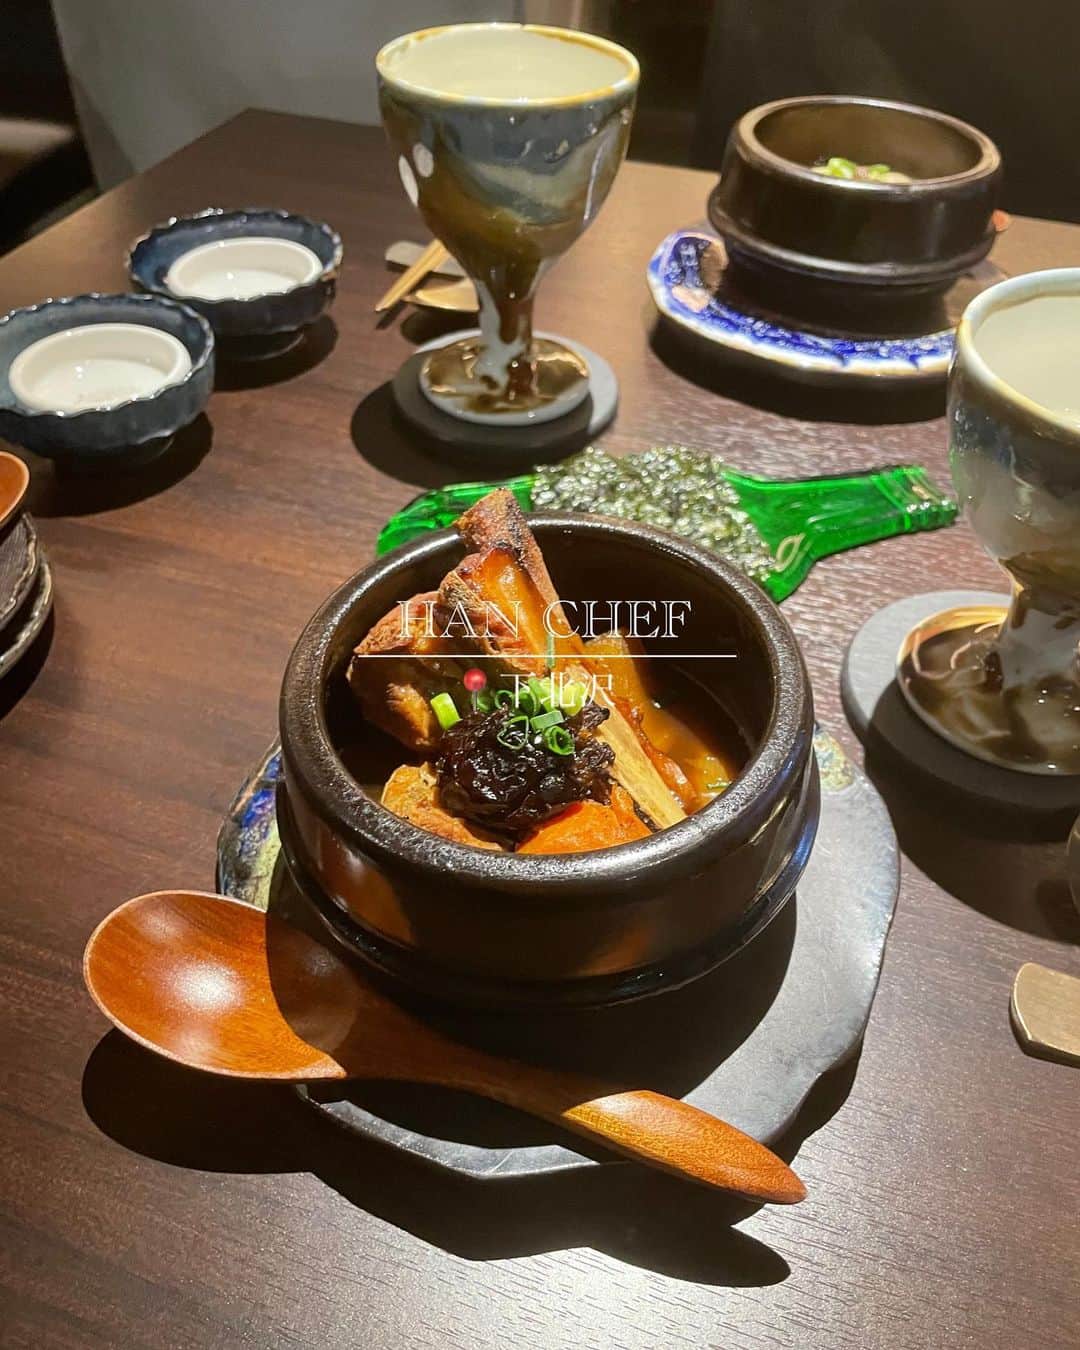 菊池遥香のインスタグラム：「. 📍HAN CHEF/下北沢  2022年11月にopenしたばかり👀 大好きな韓国料理が小皿で上品に頂ける🇰🇷🌶 韓国好きな私が本気でおすすめしたい穴場なお店🤍  もちろんシェフは韓国の方なので本格的な韓国料理が楽しめます⸜ ෆ‪ ‪⸝‍  今回頂いたコース𓂃𓈒𓂂 ☑厳選食材のジョン ☑豆腐キムチ ☑カンジャンセウ ☑ほしだらのスープ ☑シェフ特製カルビチム ☑シェフ特製薬膳参鶏湯 ☑冷麺 ☑季節のデザート（胡麻アイス）  ドリンクも사랑해っていう韓国のホワイトビールが楽しめたりもちろん生マッコリも🫶🏻 ここの生マッコリ、今まで飲んだマッコリで1番美味しかったし飲みやすかった🍶⟡.·  どのお料理も普通の韓国料理とは一味違って初めて食べる味ばかりで本当に美味しかったんだけど、、、 韓国の定番おつまみと言われている豆腐キムチがお気に入りだったなぁ🙆‍♀️  美味し過ぎて最後、写真撮るの忘れてるの途中で気づいて食べかけなの許して🙏🏻笑  ランチメニューは¥1200〜 ディナーは3種類のコース、アラカルトがあったよఽ✍  韓国料理をゆっくり楽しみたい 新感覚な韓国料理を楽しみたい って方におすすめ🫰🏻💓  是非行ってみてねん🥂‎ 𓈒𓏸  ✎︎＿＿＿＿＿＿＿＿＿＿＿＿  🏡 東京都世田谷区北沢2-14-2 第2東洋興業ビル 3F  🚶‍♀️下北沢駅から徒歩5分ほど  ✎︎＿＿＿＿＿＿＿＿＿＿＿＿  . #韓国料理 #下北沢 #下北沢グルメ #dinner #東京デート #東京グルメ #居酒屋 #隠れ家的なお店 #food #냠냠 #먹스타그램 #맛집탐방 #인스타푸드 #푸드스타그램 #韓国 #生マッコリ #カンジャンセウ #参鶏湯」